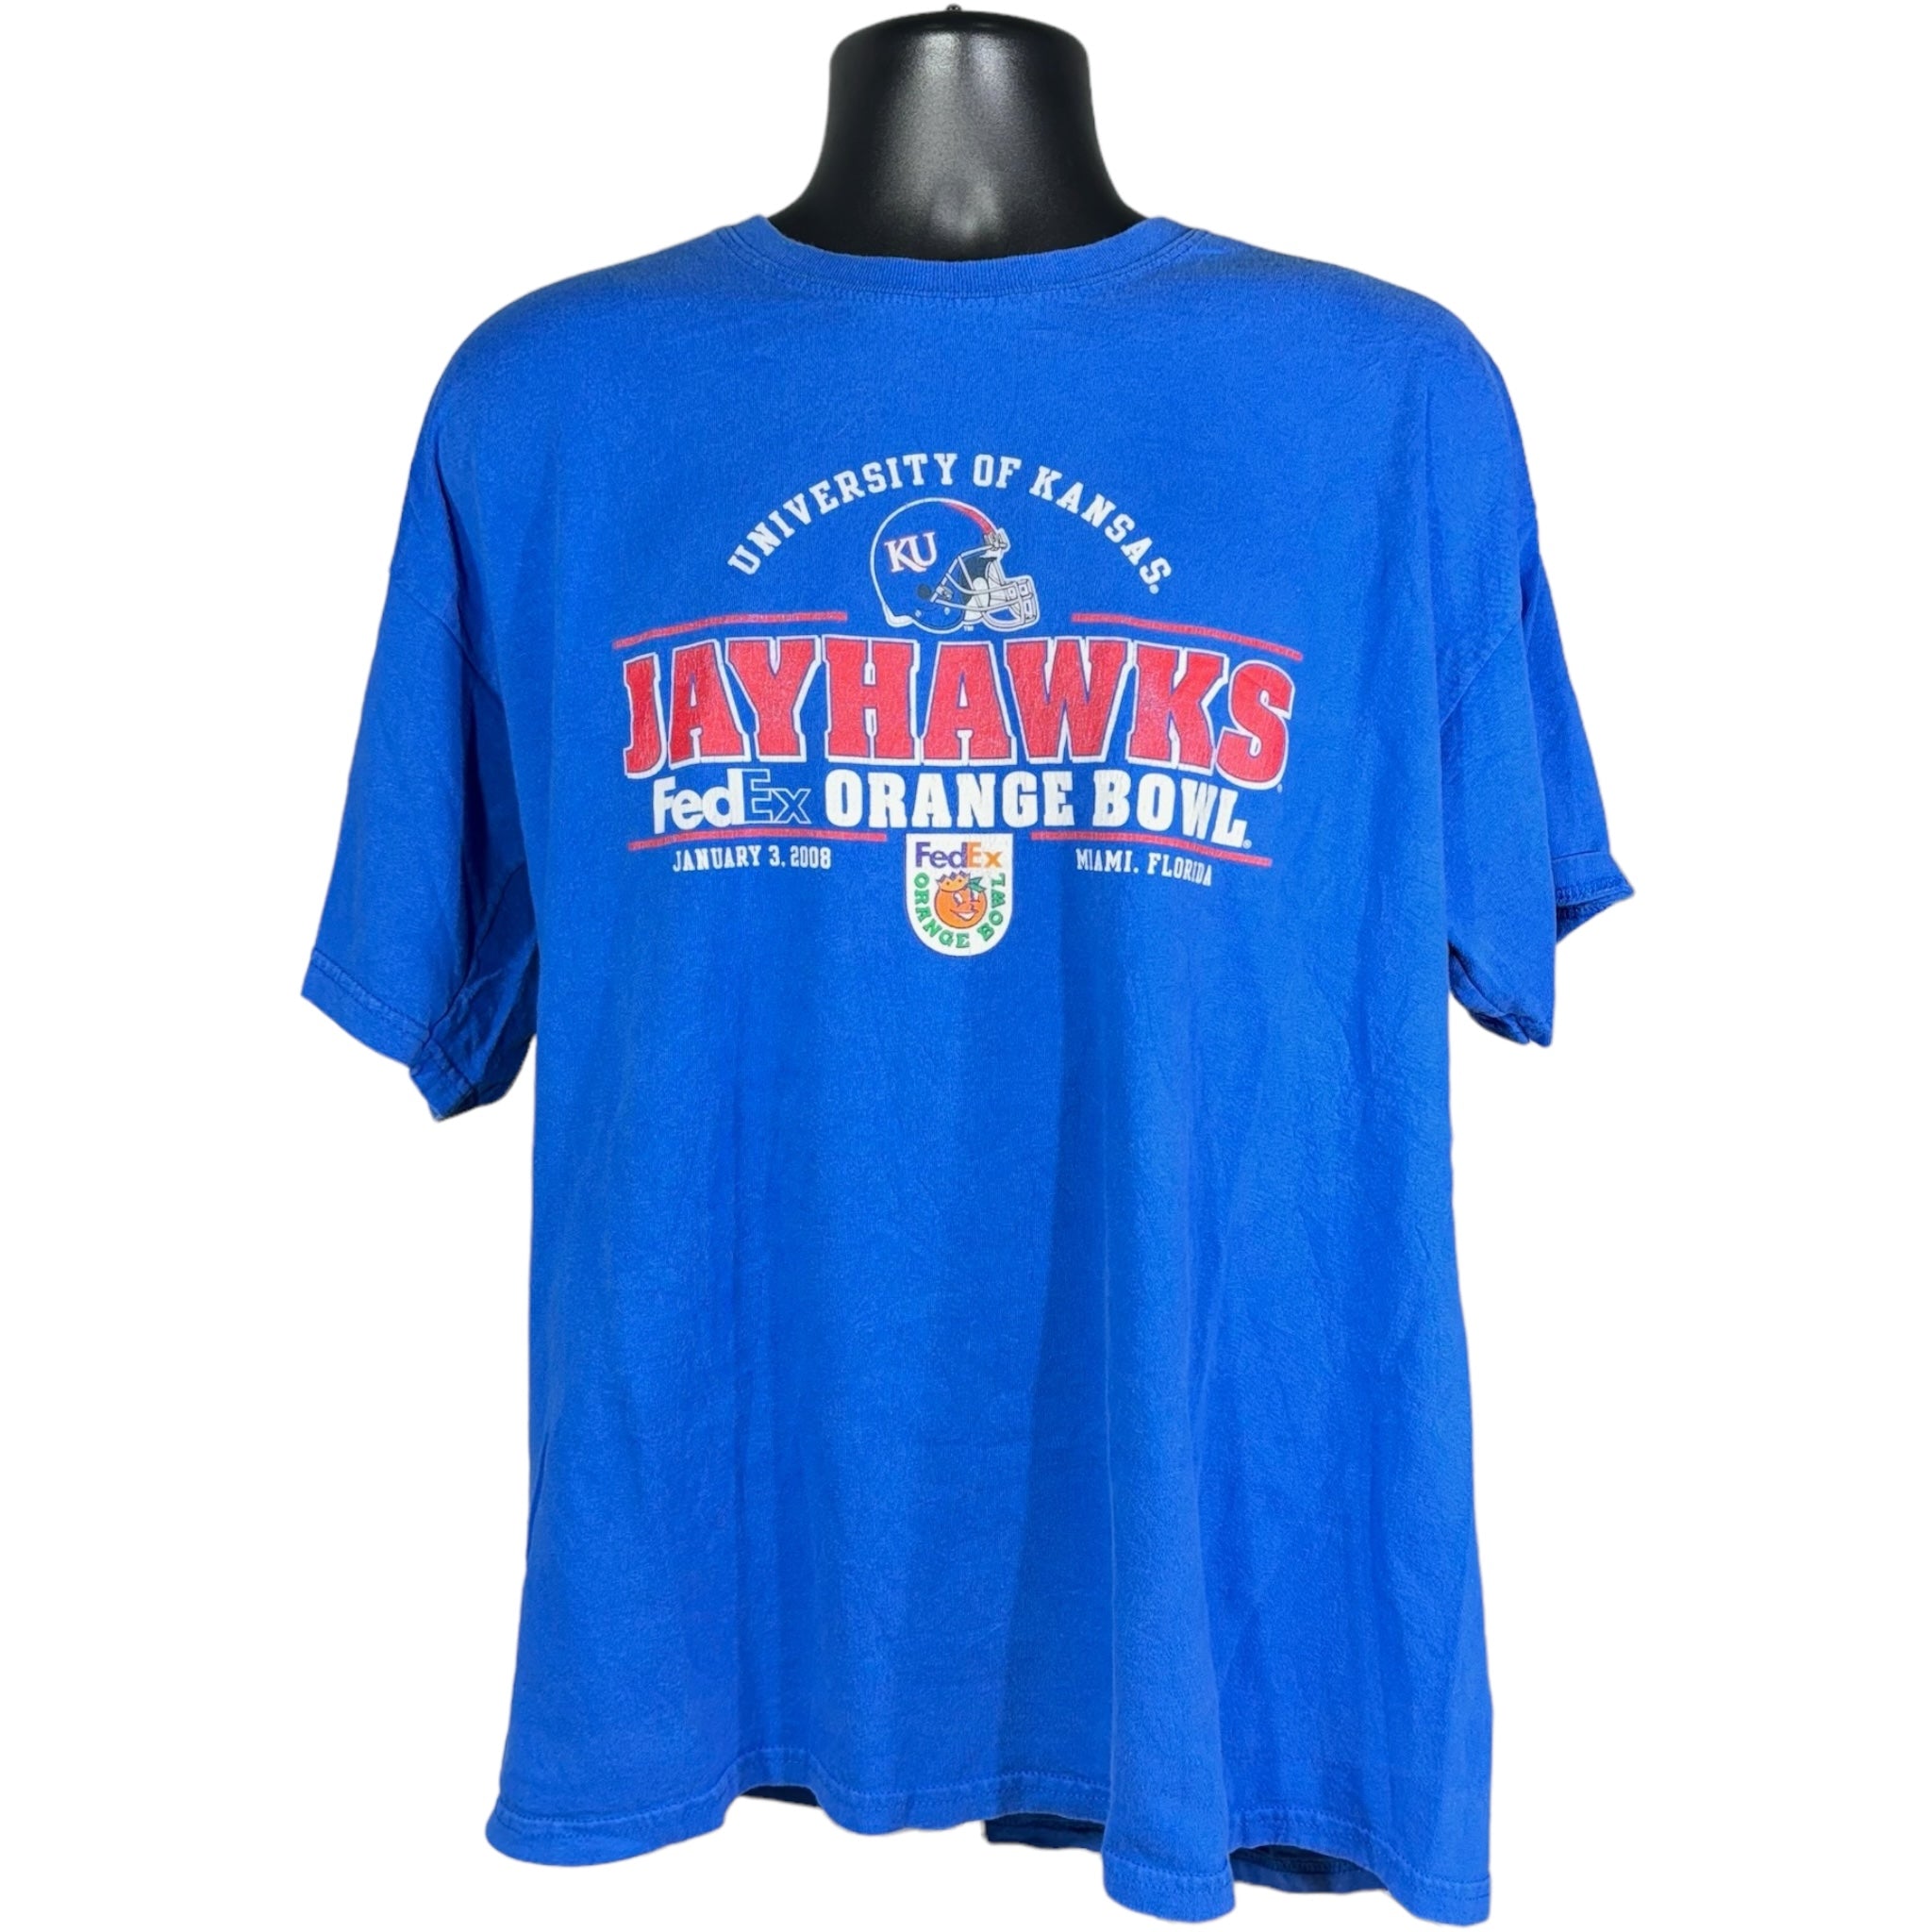 Vintage University of Kansas Jayhawks Football Tee